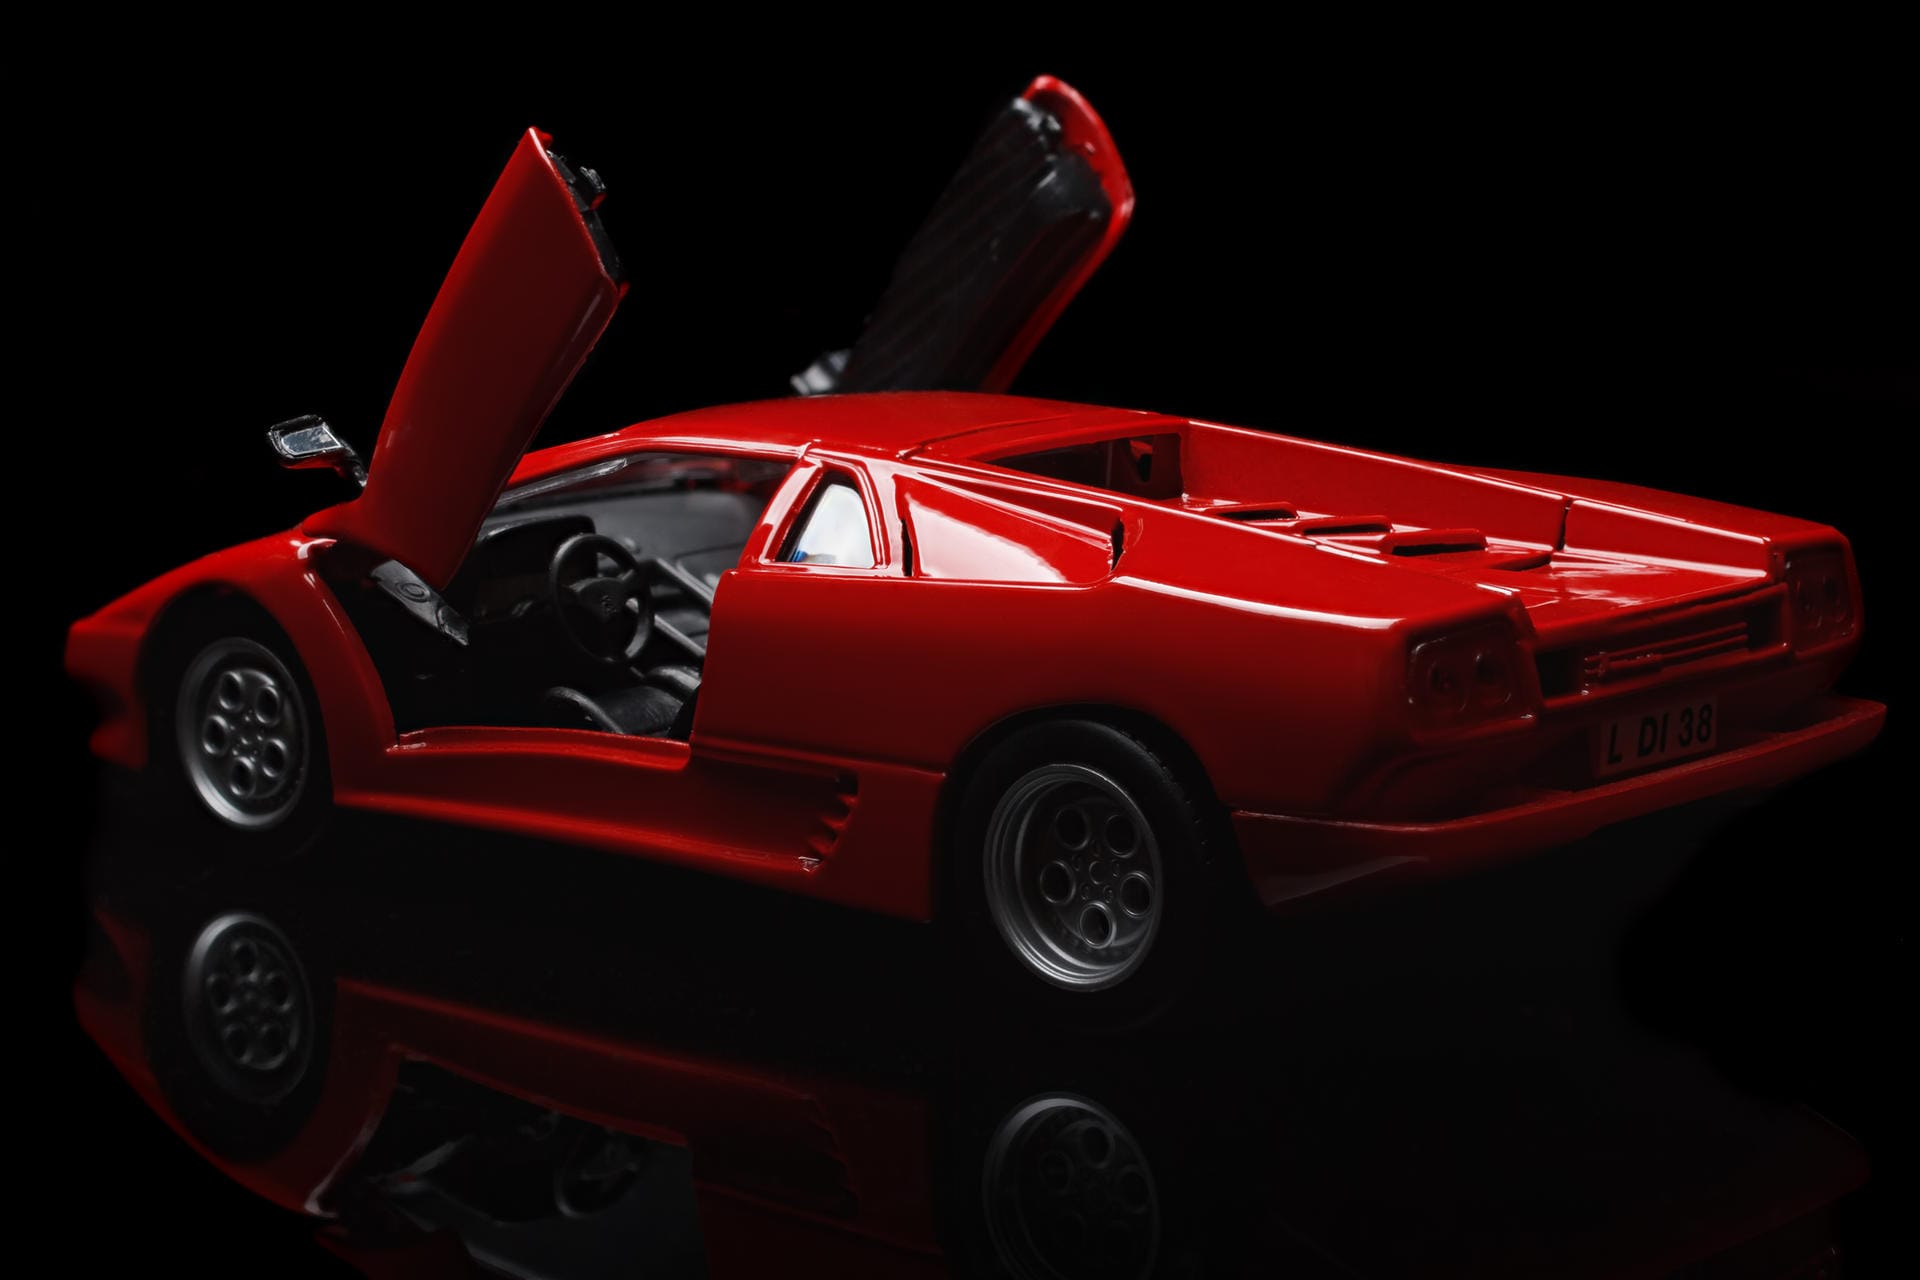 Ist genügend Budget vorhanden, greifen Männer gerne auch zum roten Lamborghini Diablo. "Männer schlüpfen dabei in die Projektion, die das Auto-Image vermittelt", sagt der Frankfurter Männercoach Gerrit Grahl.